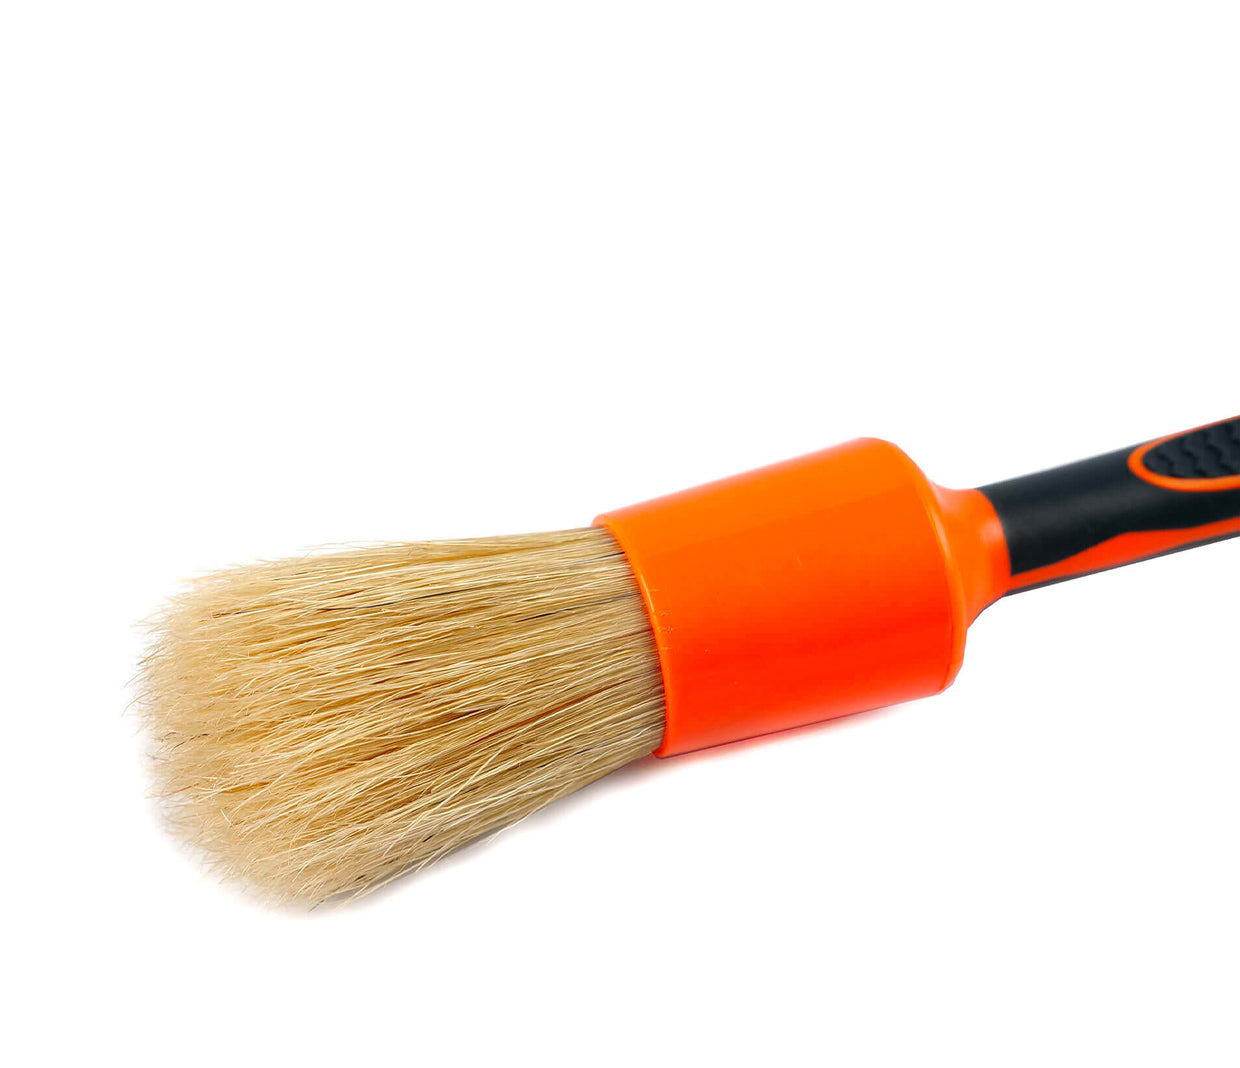 Maxshine Detailing Brush - Boar's Hair 14mm